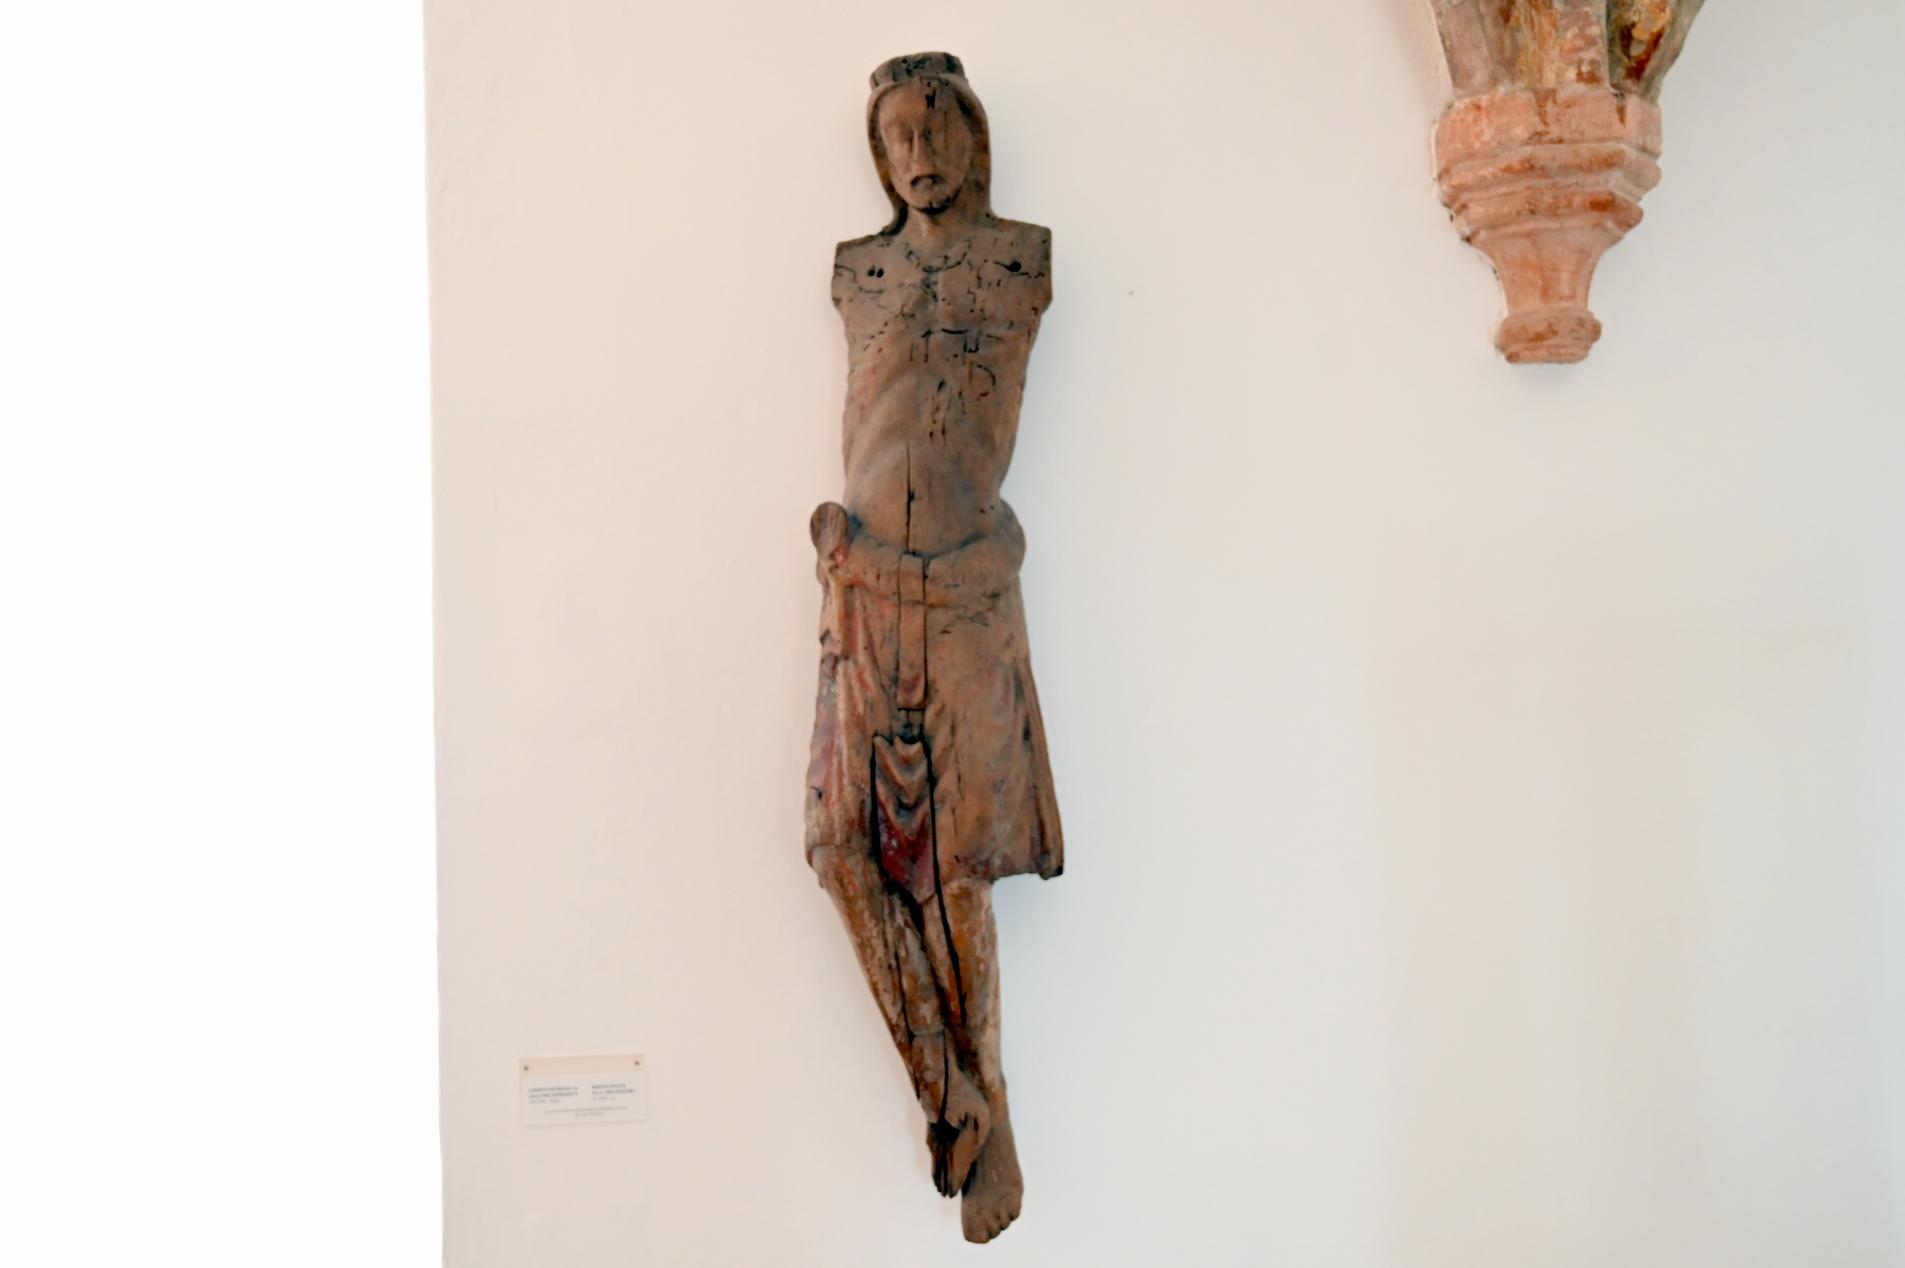 Christuskörper von einem Triumphkreuz, Odenbüll, Kirche St. Vinzenz, jetzt Schleswig, Landesmuseum für Kunst und Kulturgeschichte, Saal 1, um 1240